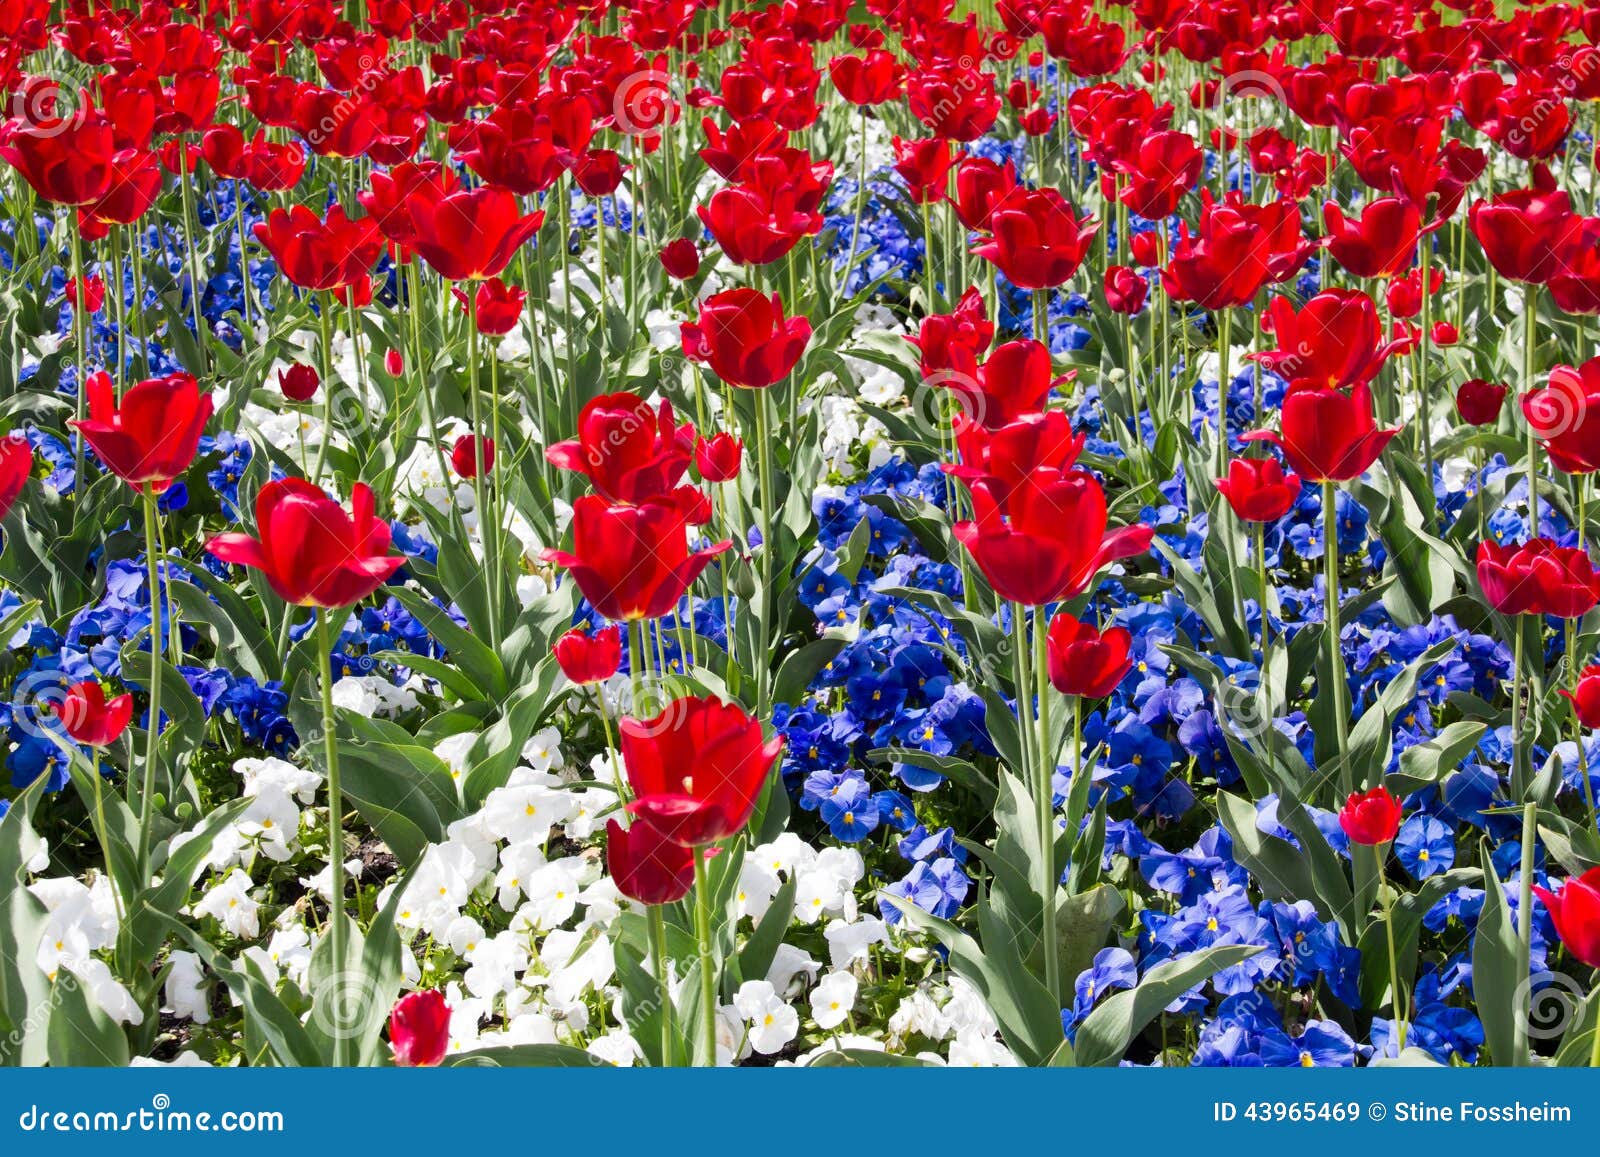 Rouge, blanc et bleu image stock. Image du environnement - 43965469